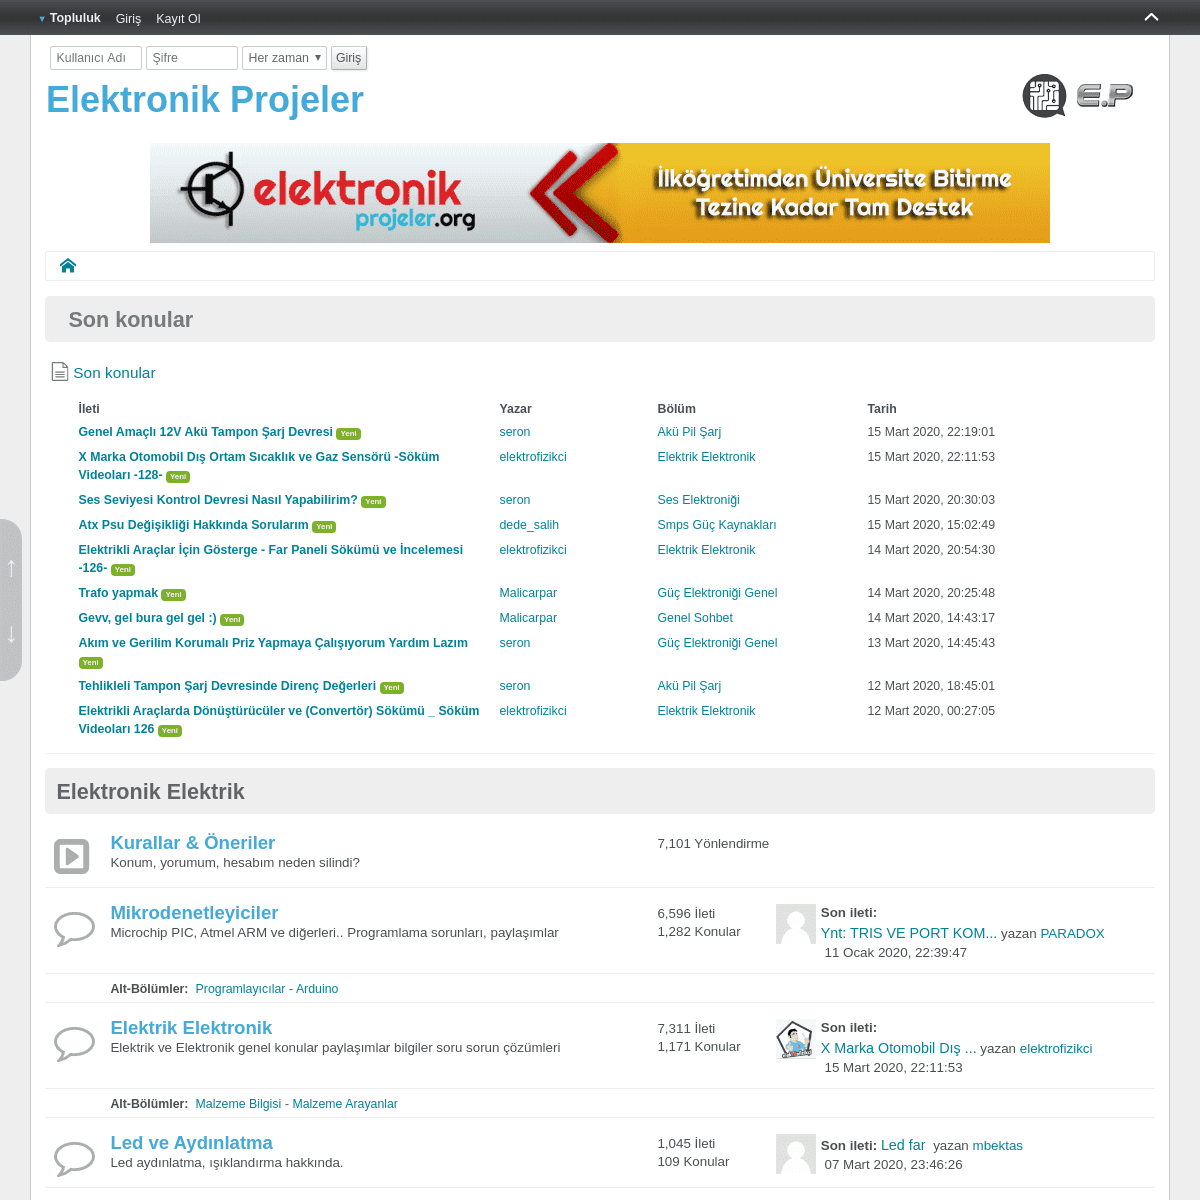 A complete backup of elektronikprojeler.com